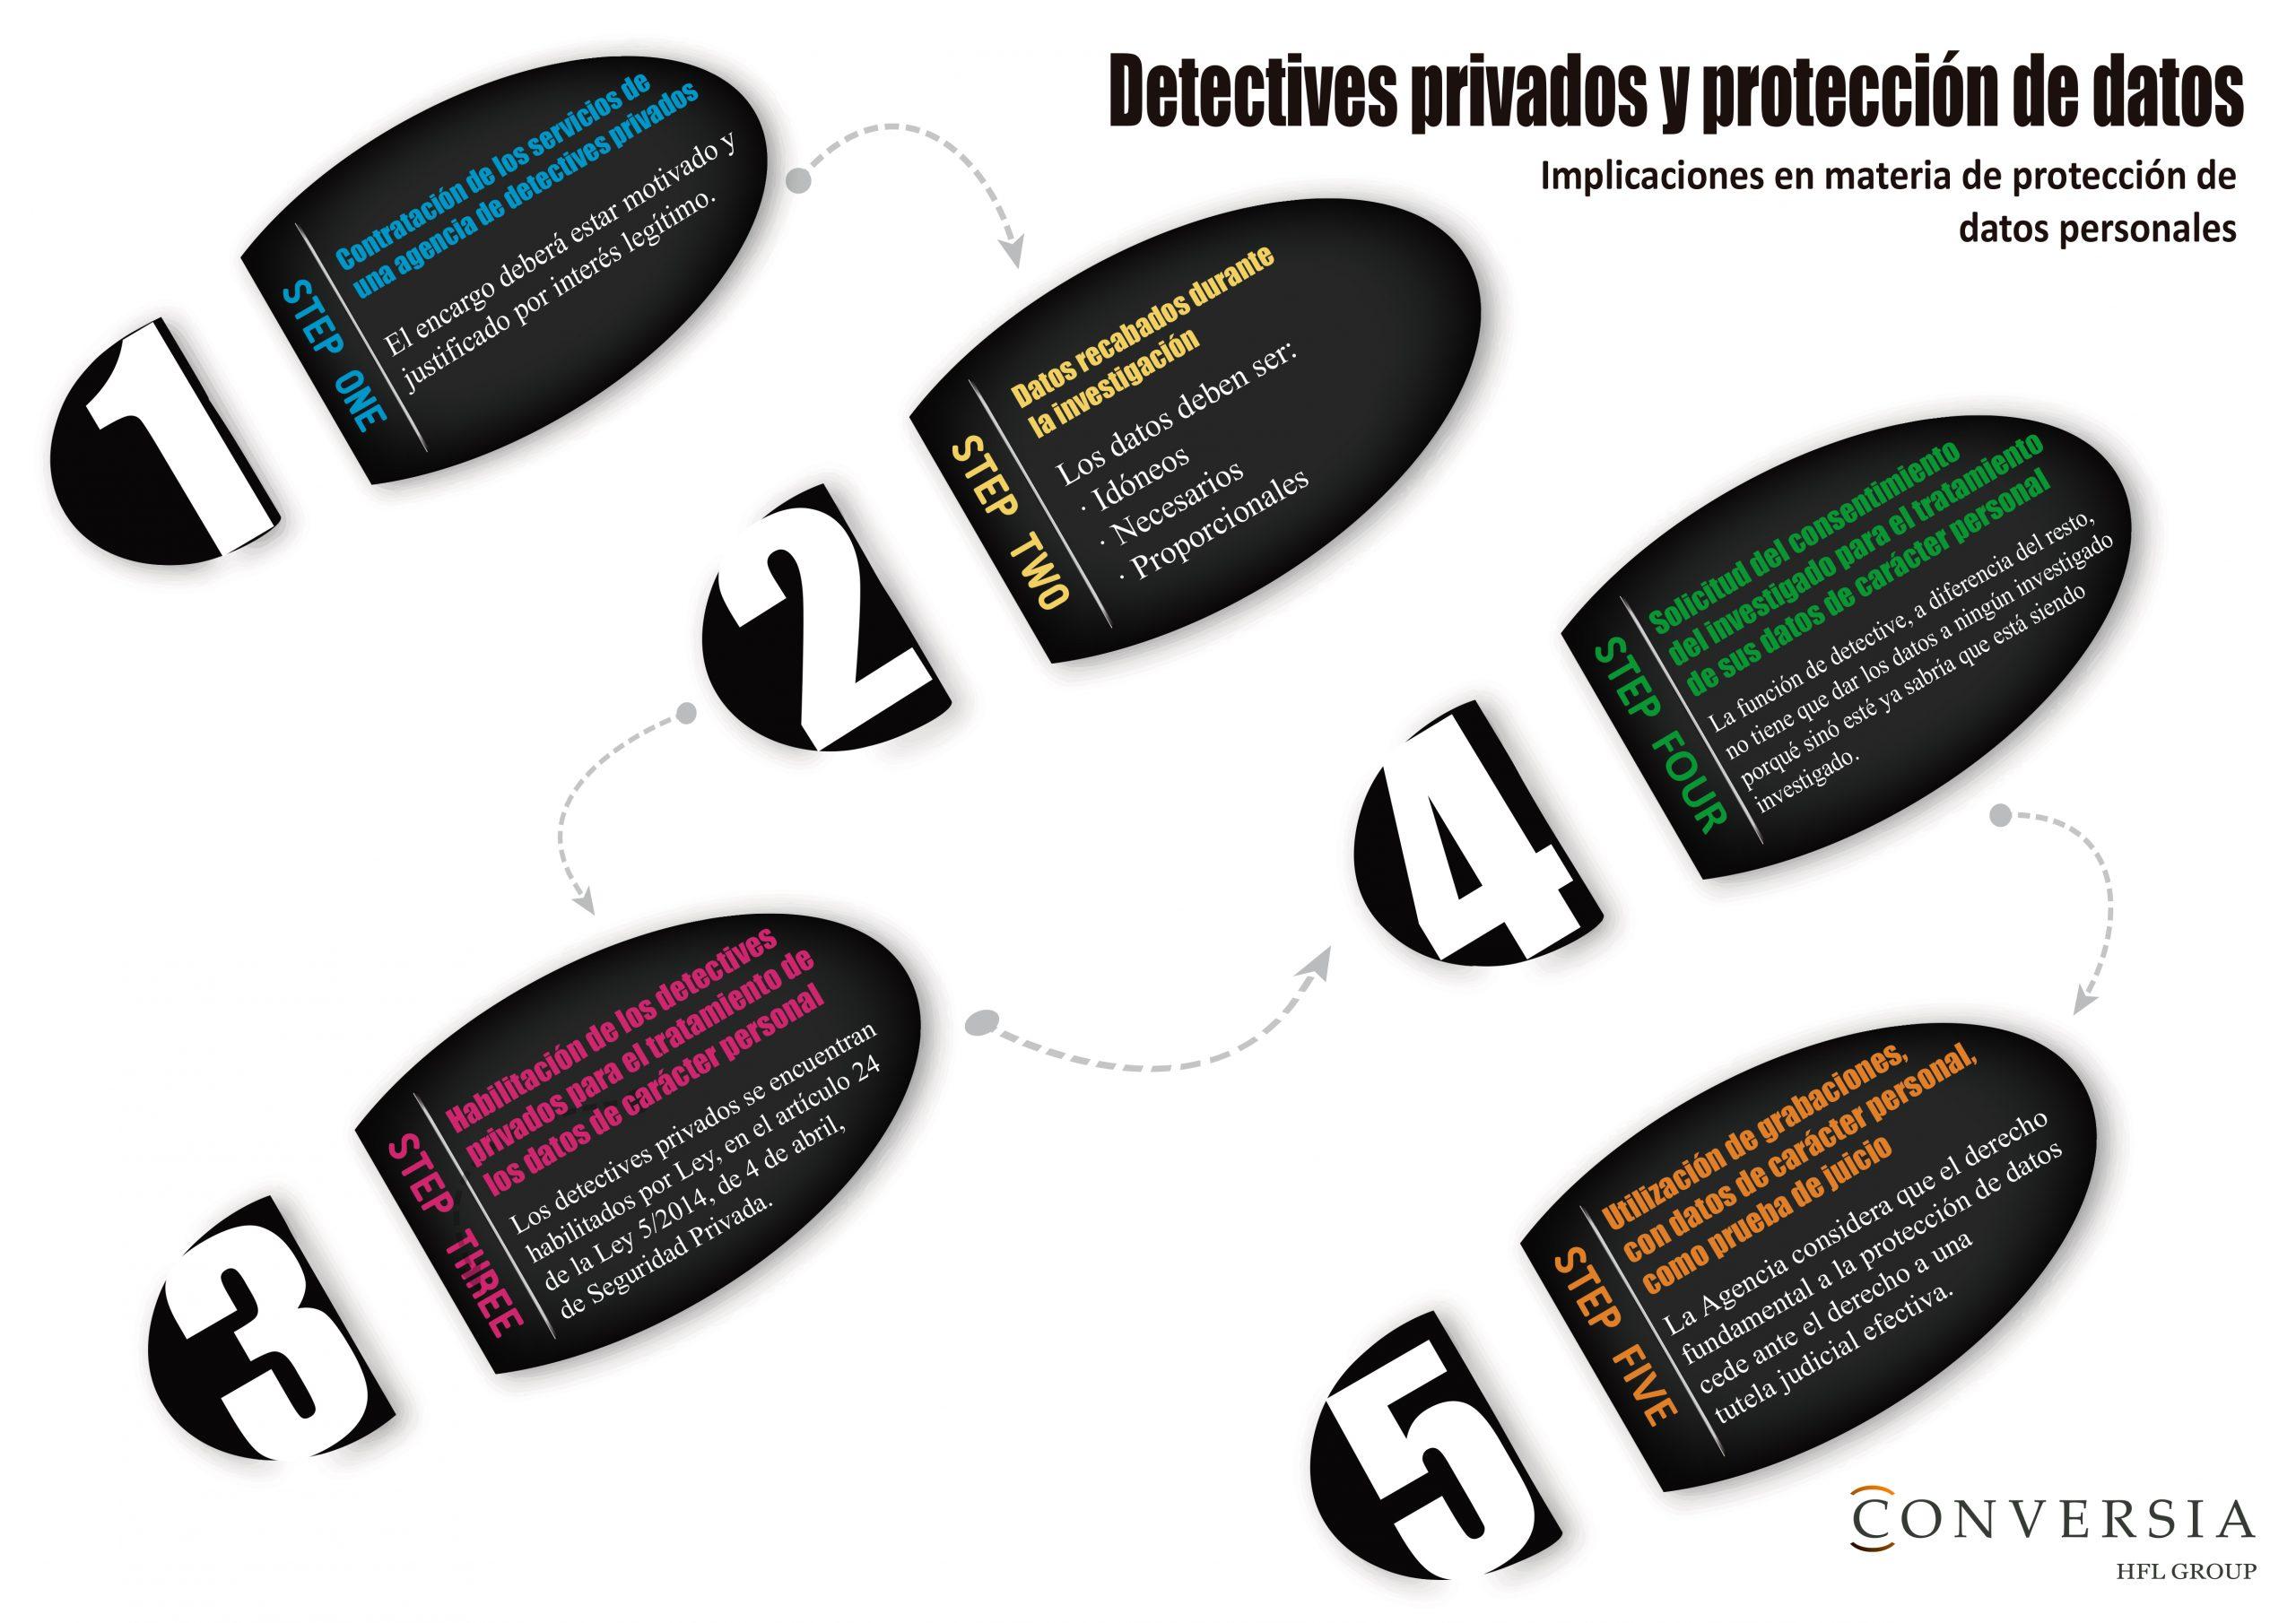 Detectives privados y protección de datos